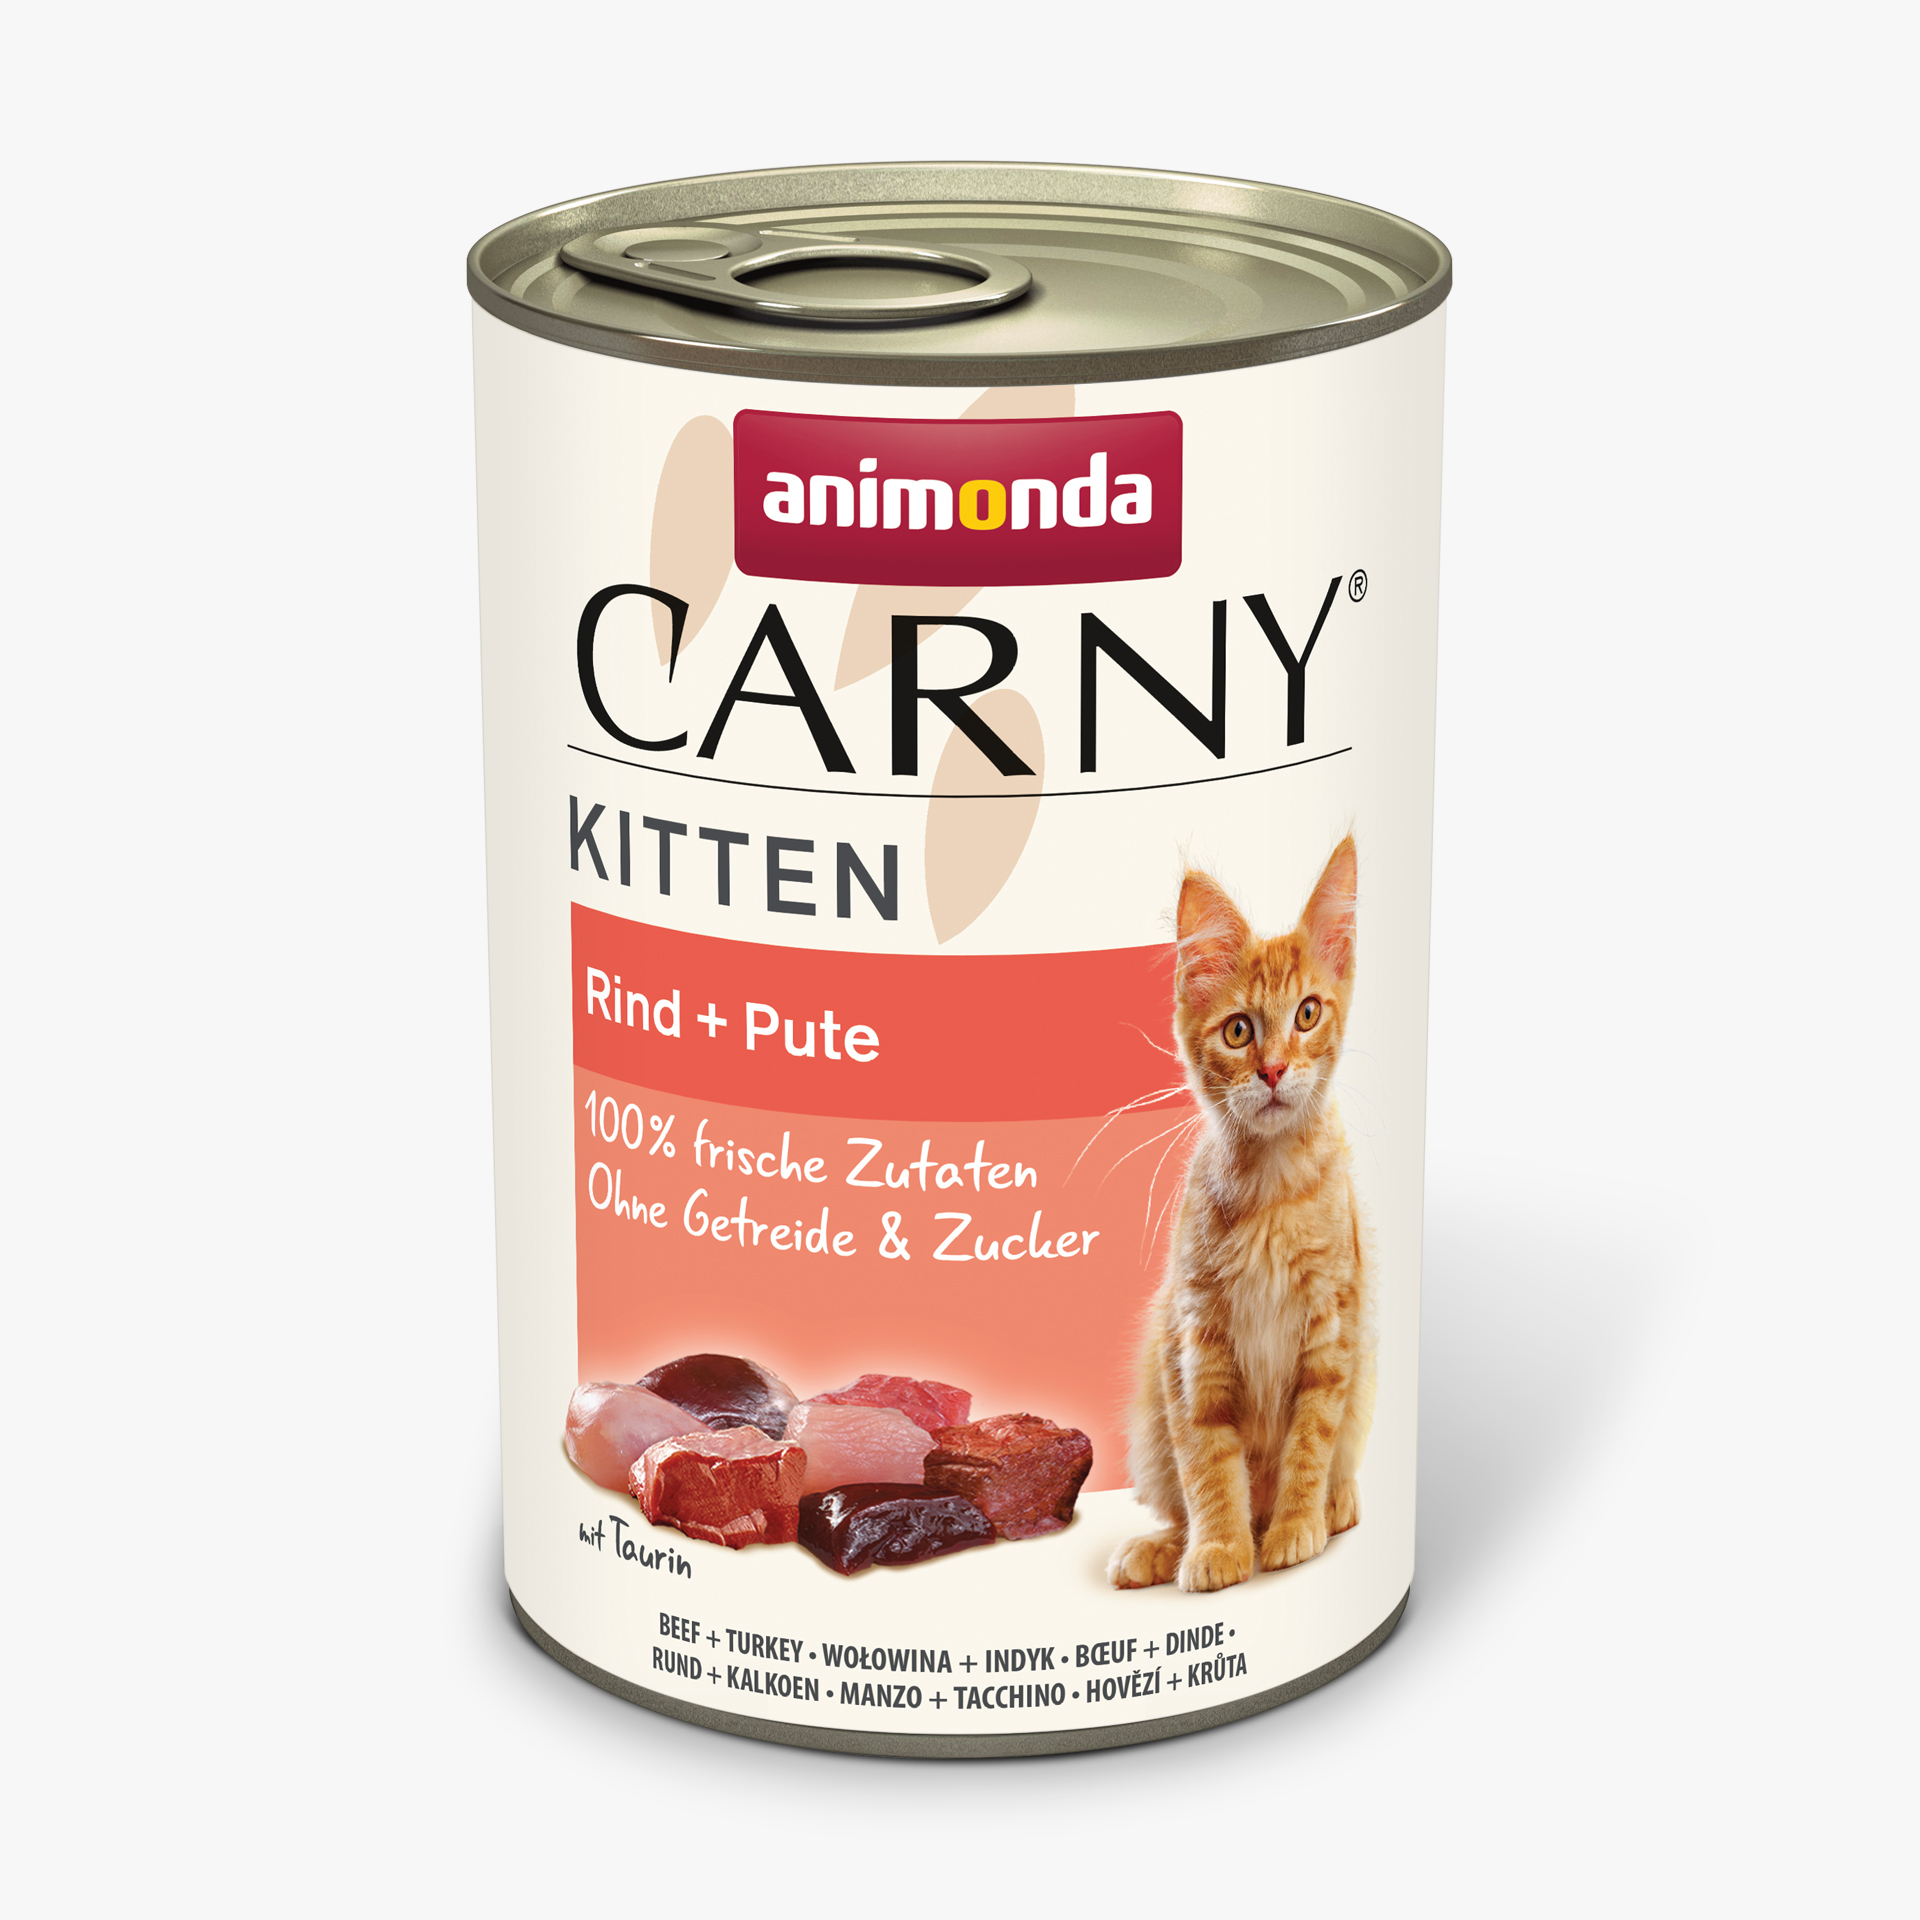 Carny Kitten Rind + Pute